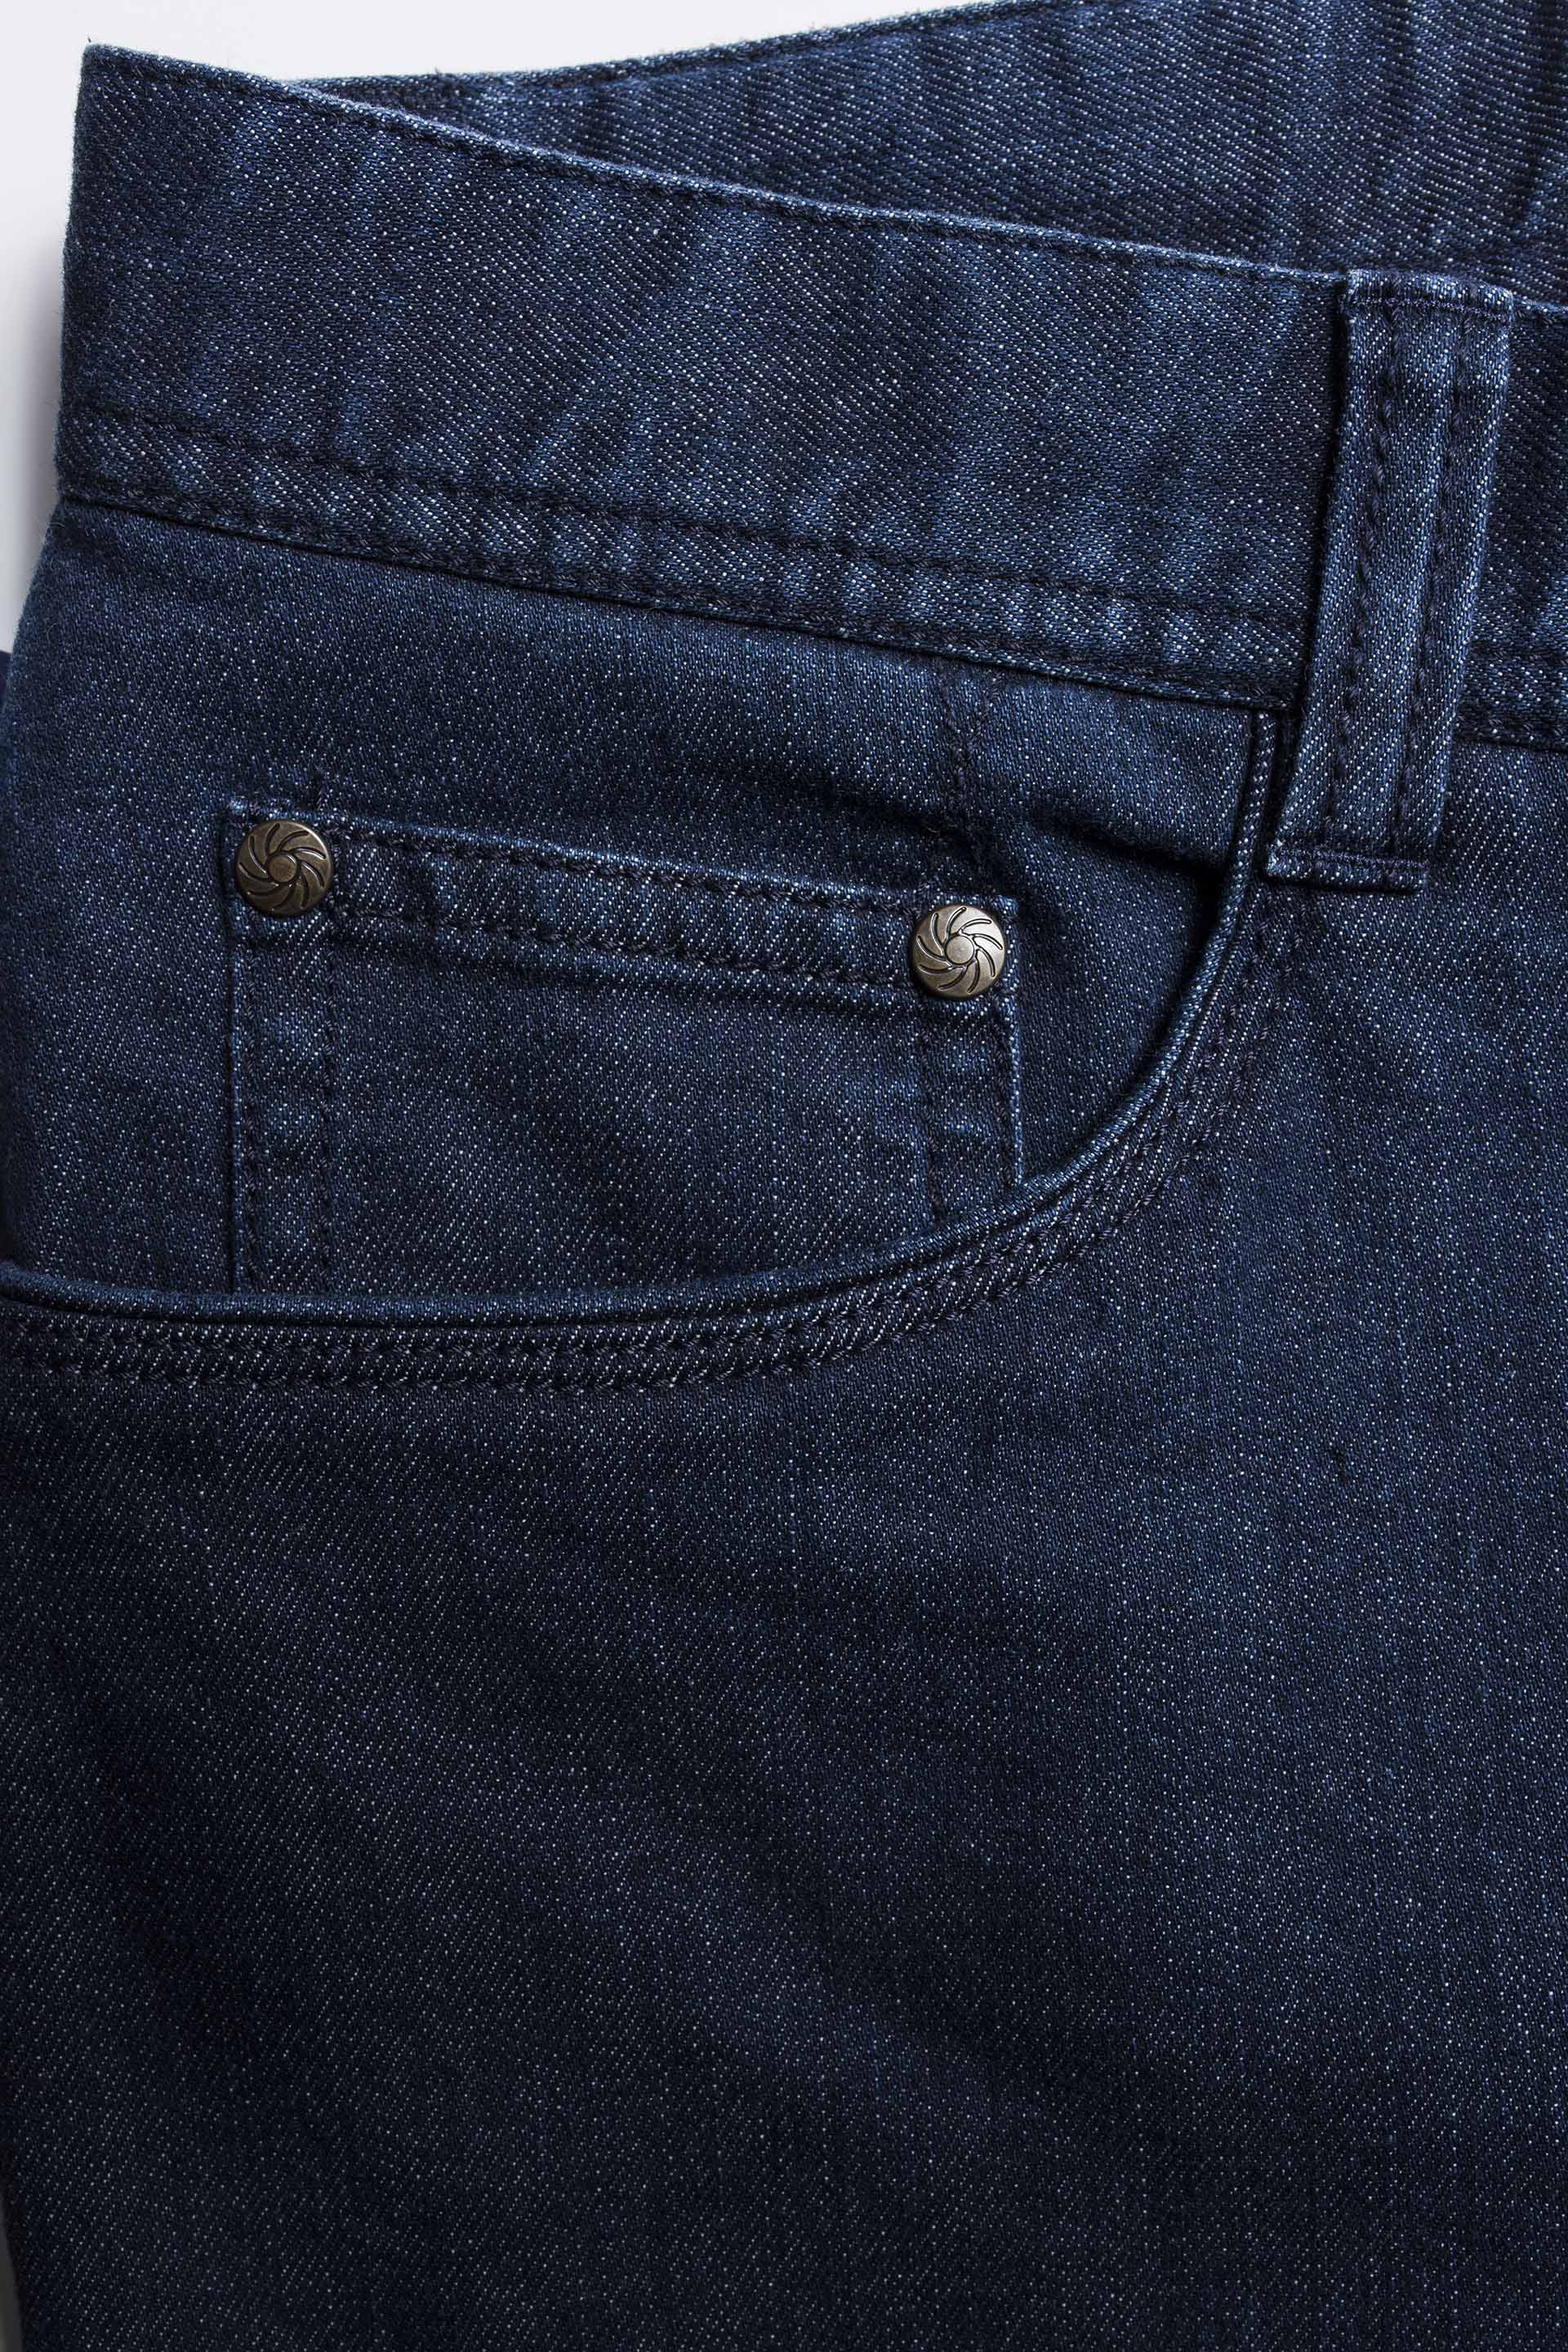 Omega Jeans - Tudor Tailor